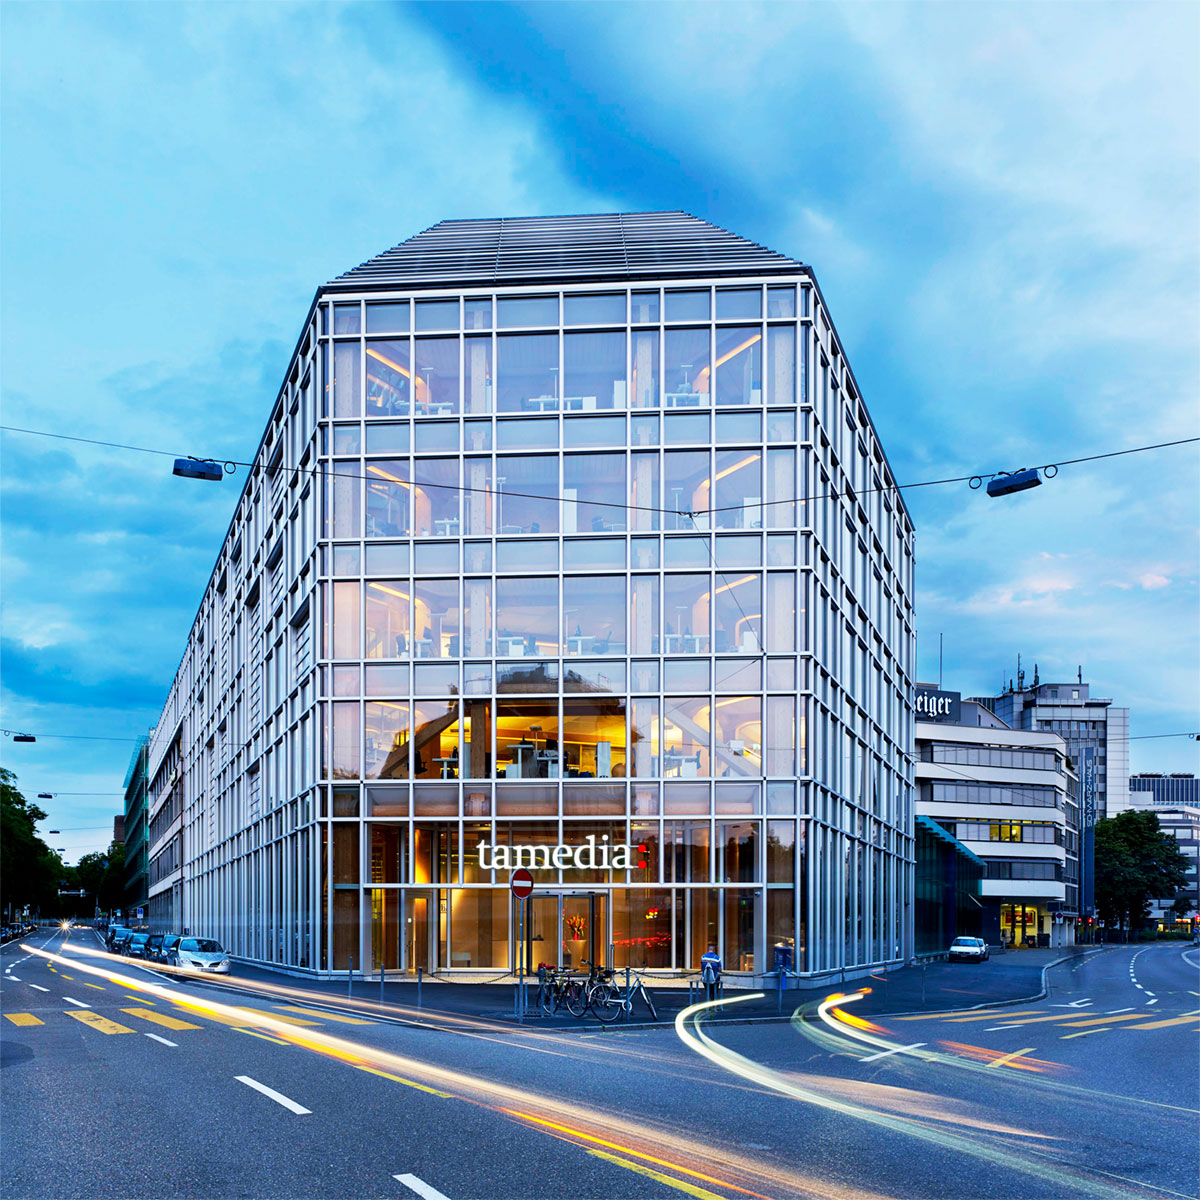 A sede do grupo editorial Tamedia, em Zurique, na Suiça, possui sistemas de envidraçamento de alumínio que ajudaram a criar uma construção de vidro e madeira altamente sustentável. Projetado por um dos principais arquitetos do Japão, Shigeru Ban, o projeto tem uma fachada pele de vidro tripla com três metros de profundidade para a elevação de 50m de comprimento com vistas sobre o rio Sihl.